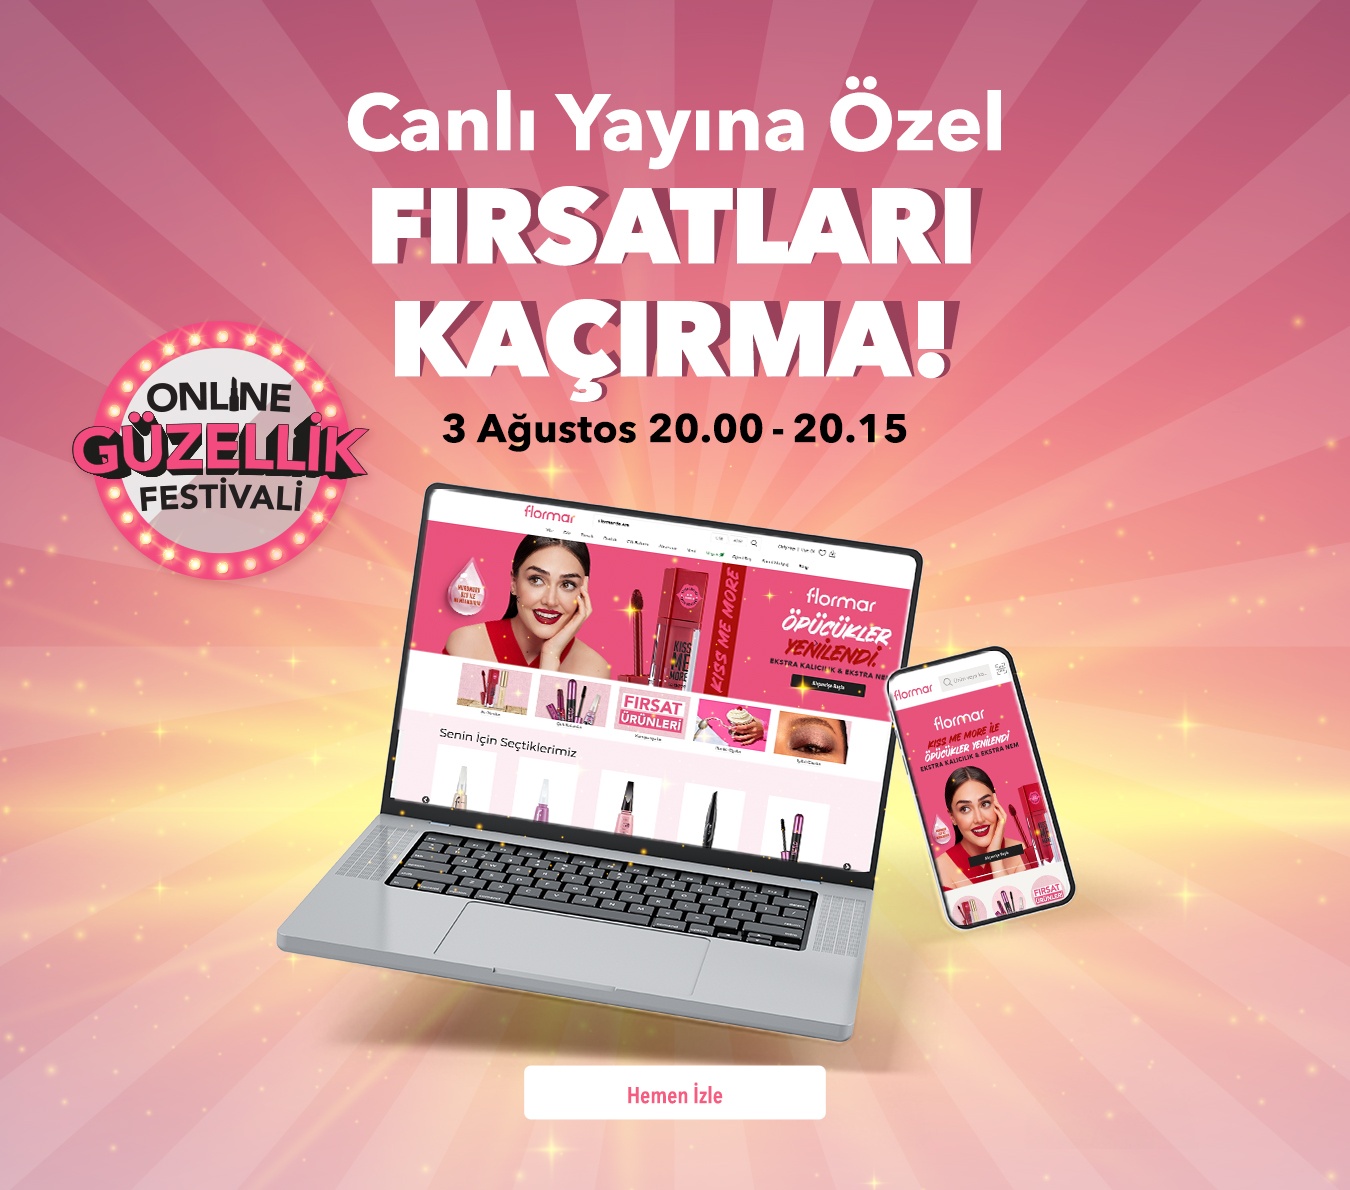 Online Güzellik Festivali, Canlı Yayın, Flormar